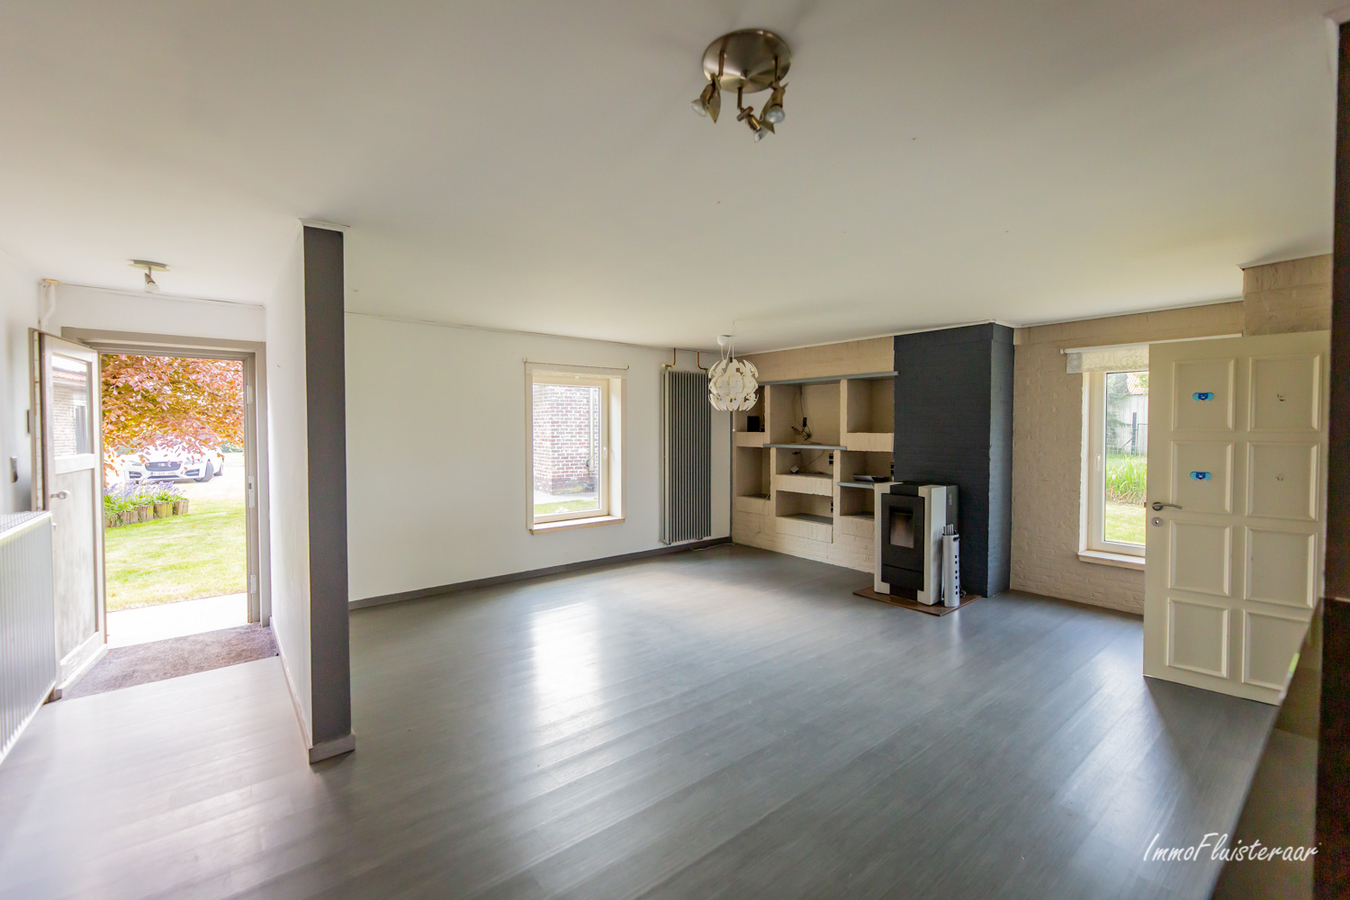 Property for sale in Sleidinge